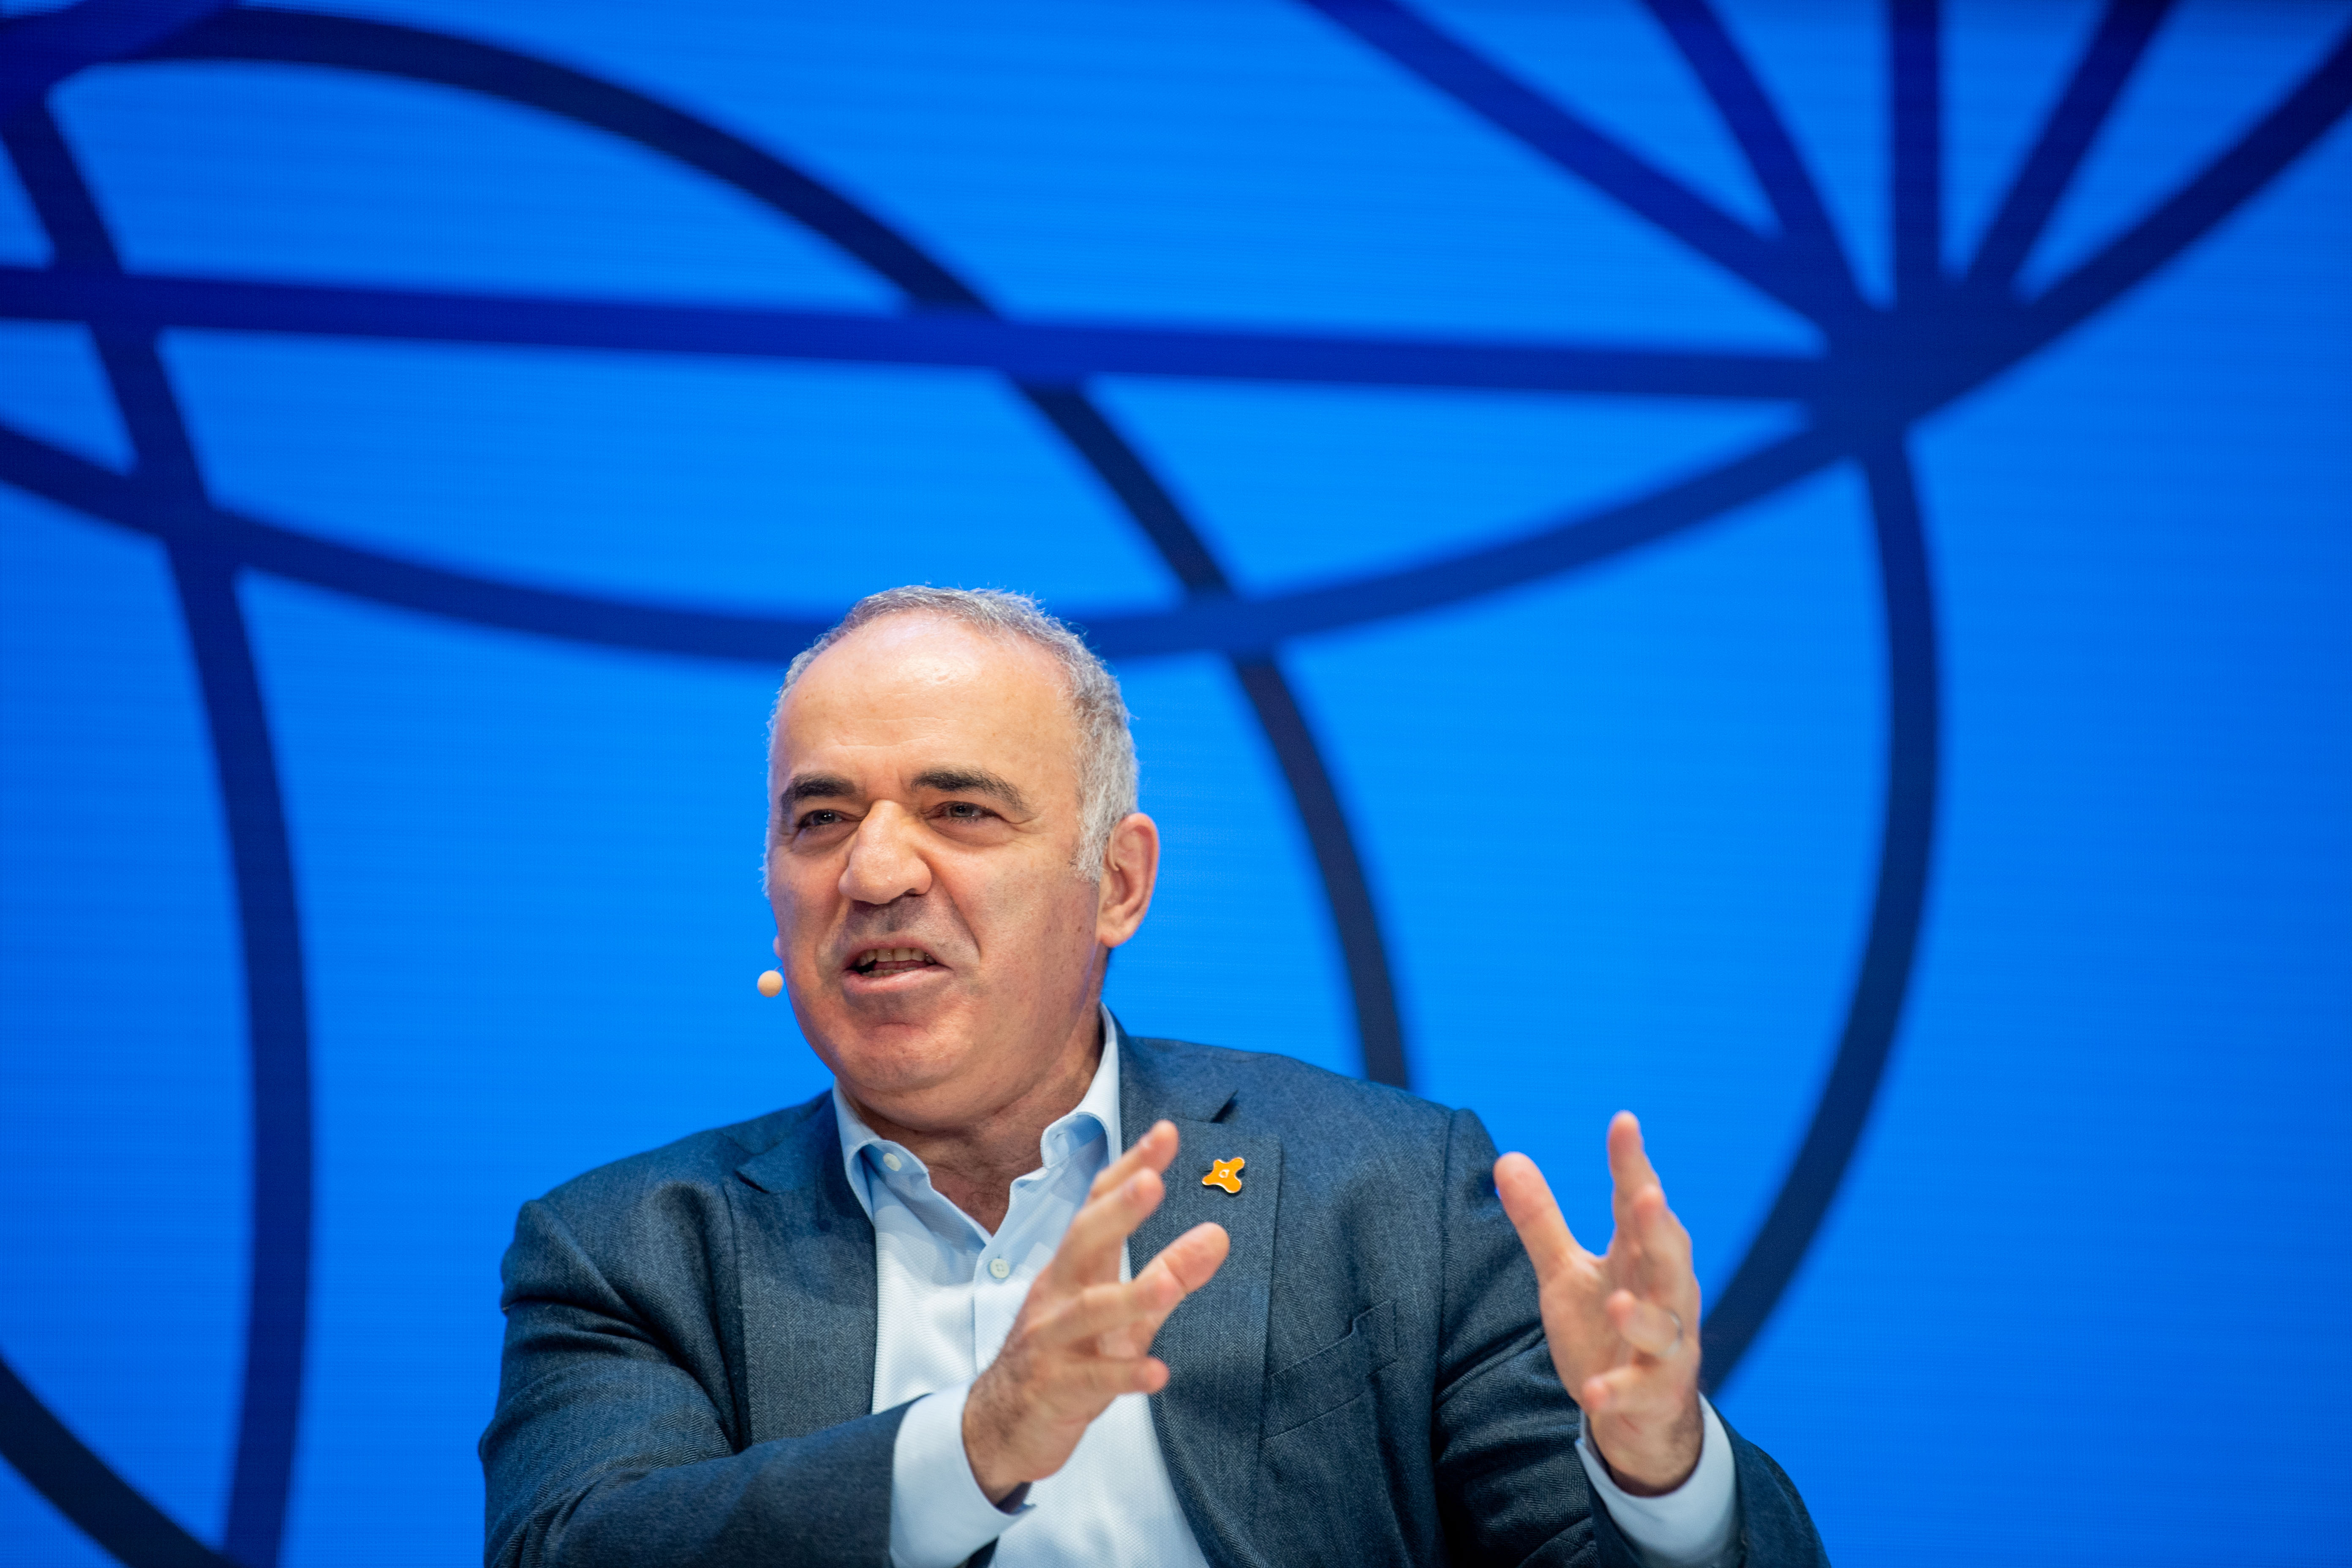 Conflito Rússia-Ucrânia na visão de Garry Kasparov 